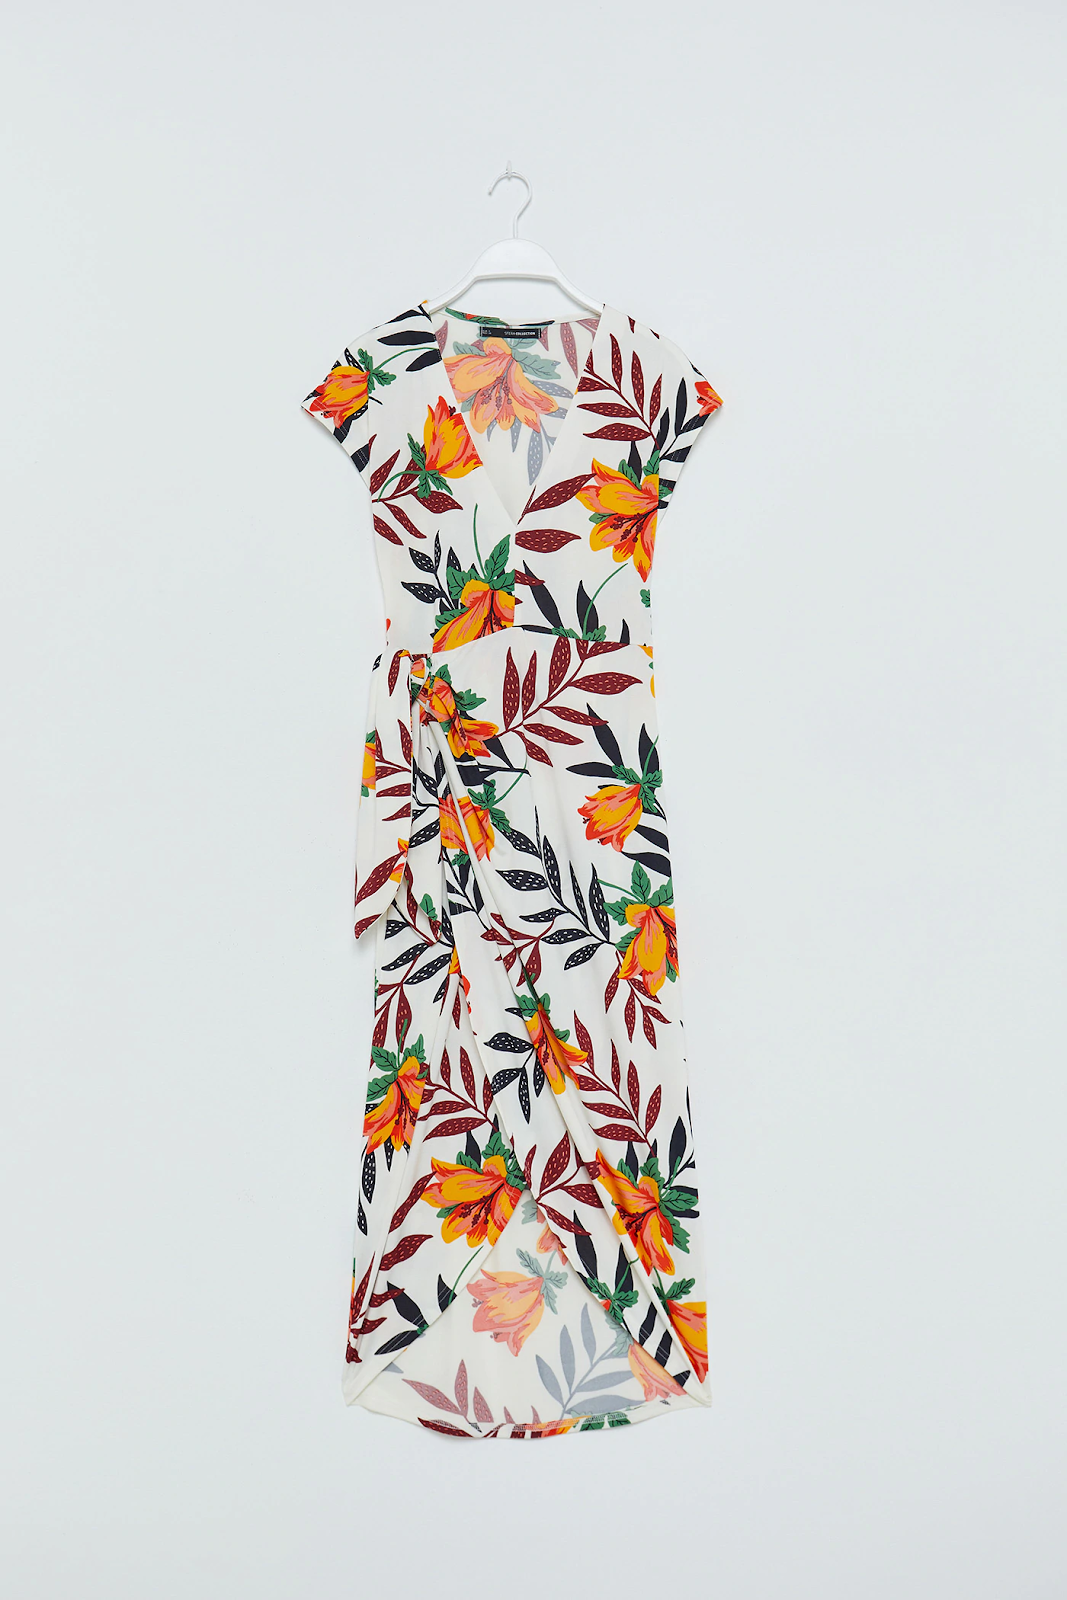 Vestido de verano de mujer, largo y de estampado floral sobre fondo blanco, de la marca Sfera